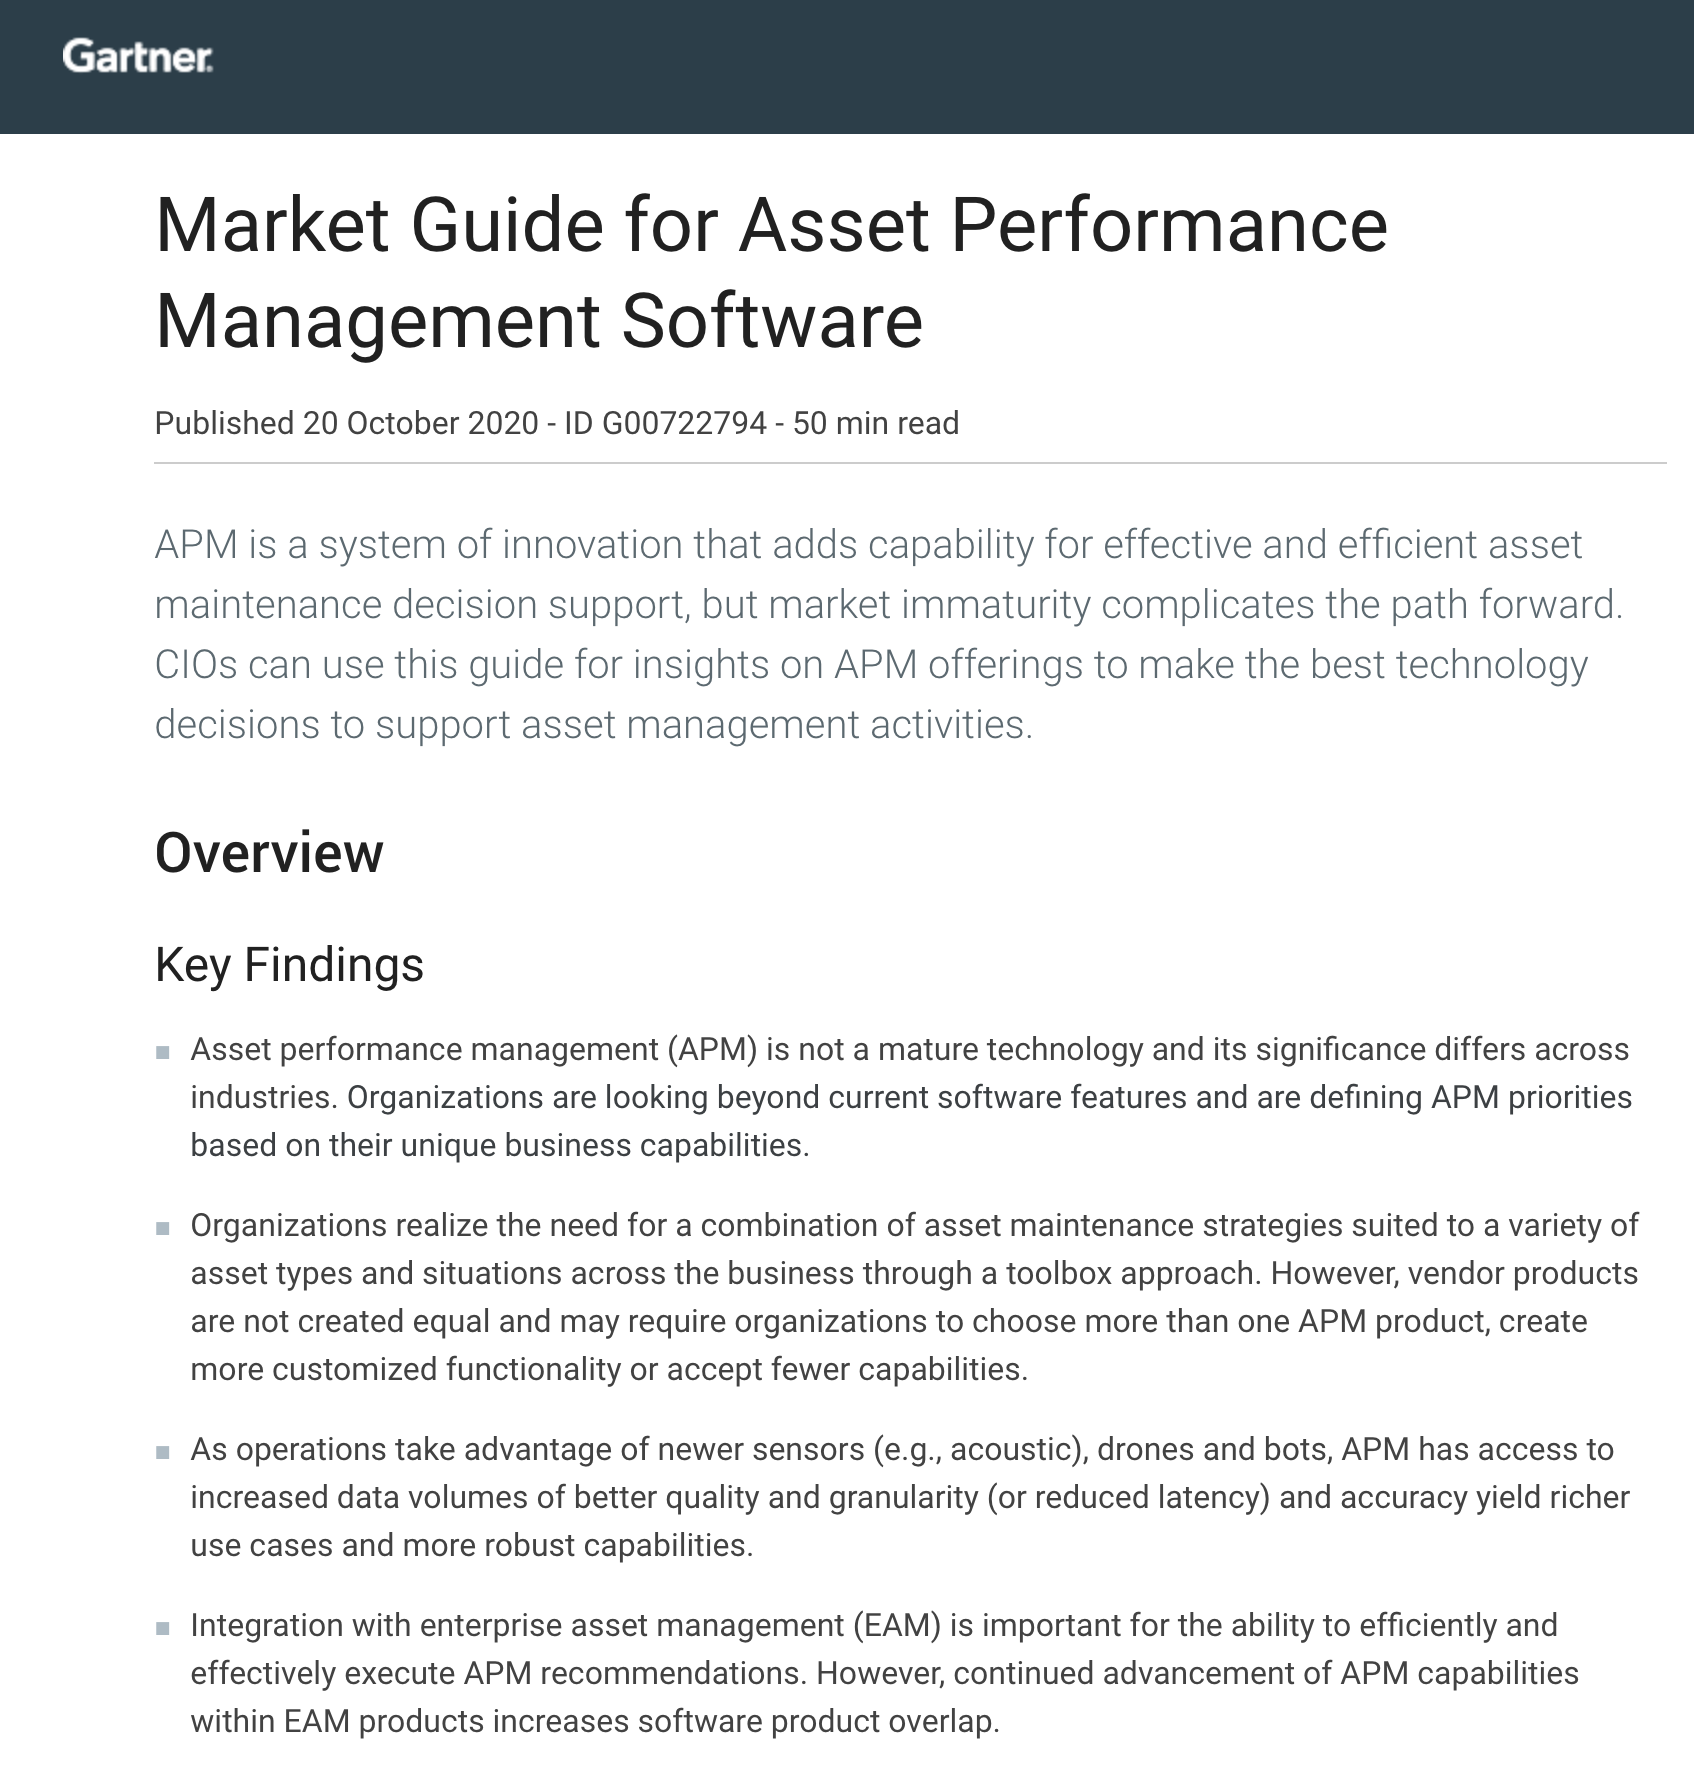 Gartner Market Guide for Asset Performance Management Software